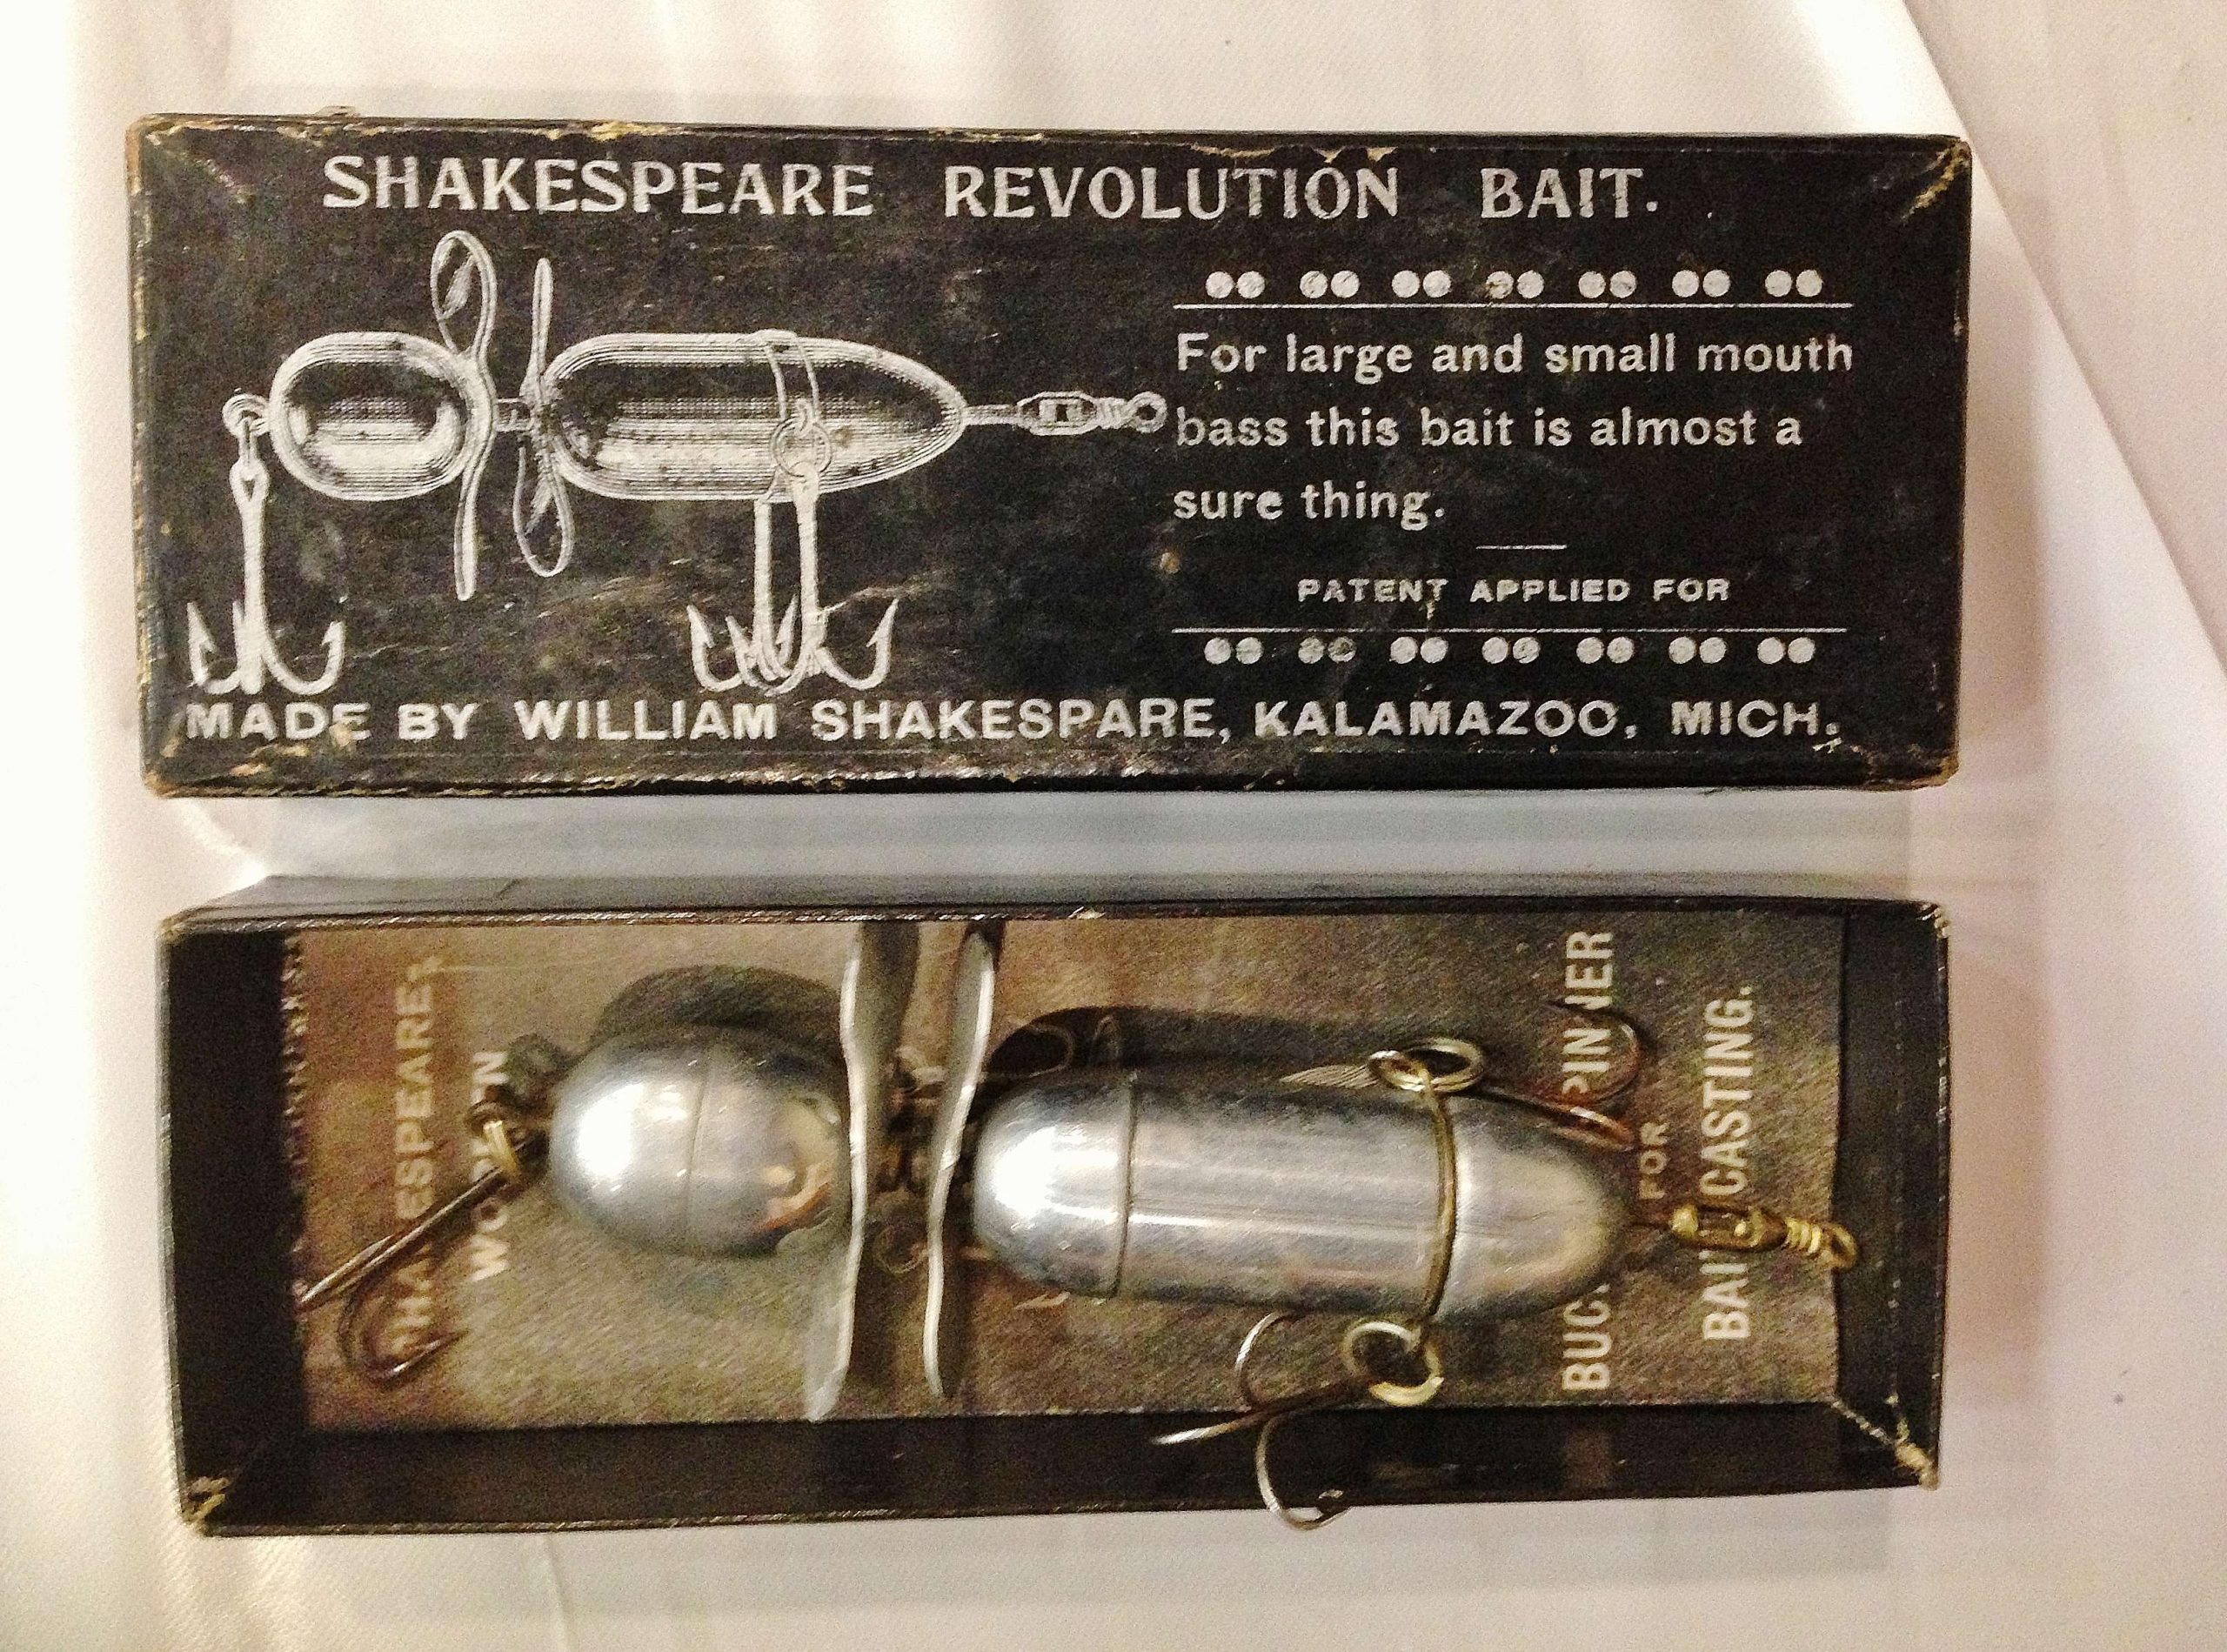 Hereâs a very rare combo: A pre-1910 Shakespeare Revolution in its original picture box. These metal contraptions were hollow-bodied and could float. They were among the first topwater lures ever developed.